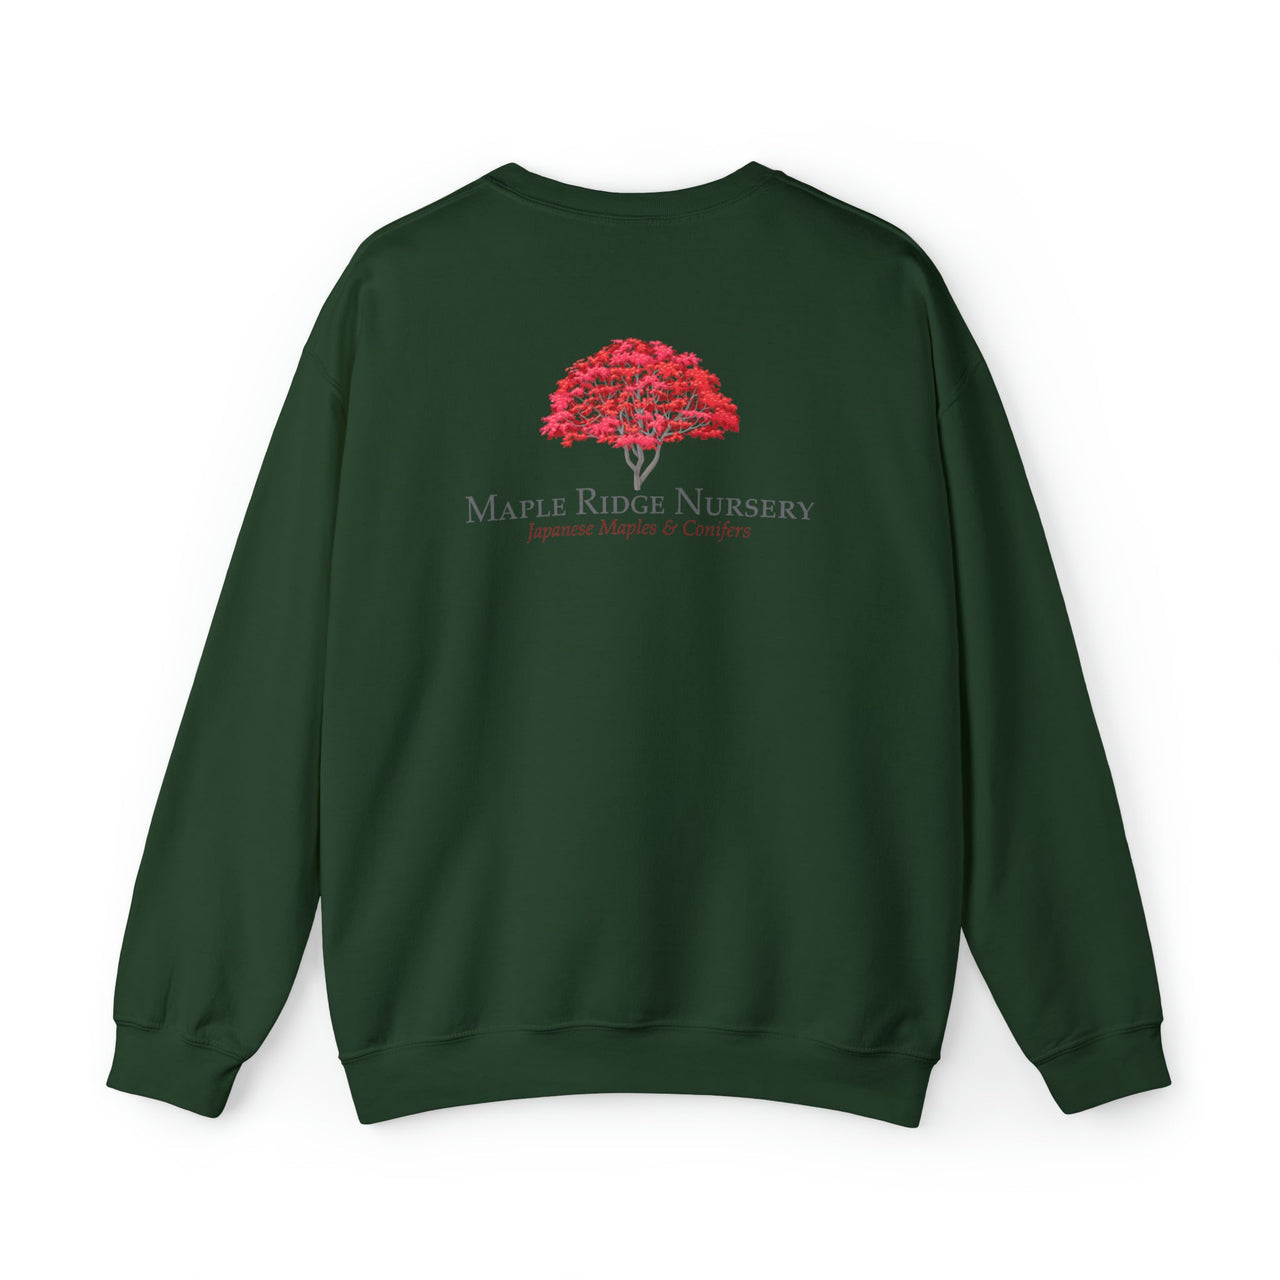 Maple Ridge Nursery/Maple Maniac Crewneck Sweatshirt - Maple Ridge Nursery